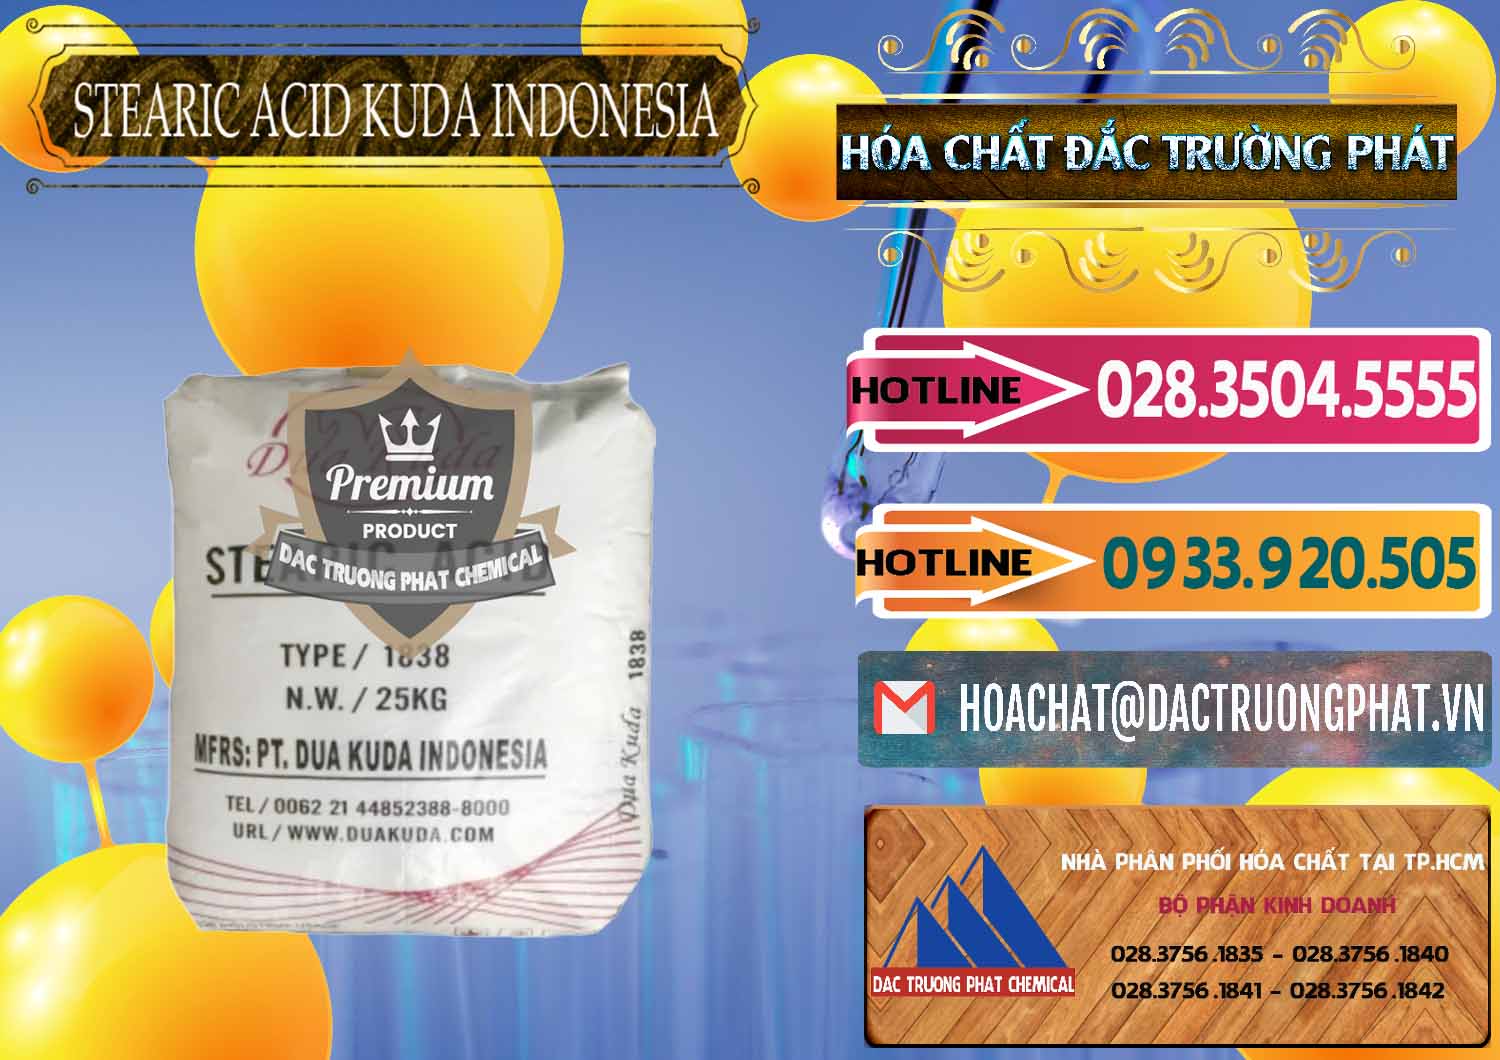 Cty bán và phân phối Axit Stearic - Stearic Acid Dua Kuda Indonesia - 0388 - Nhà nhập khẩu và phân phối hóa chất tại TP.HCM - dactruongphat.vn